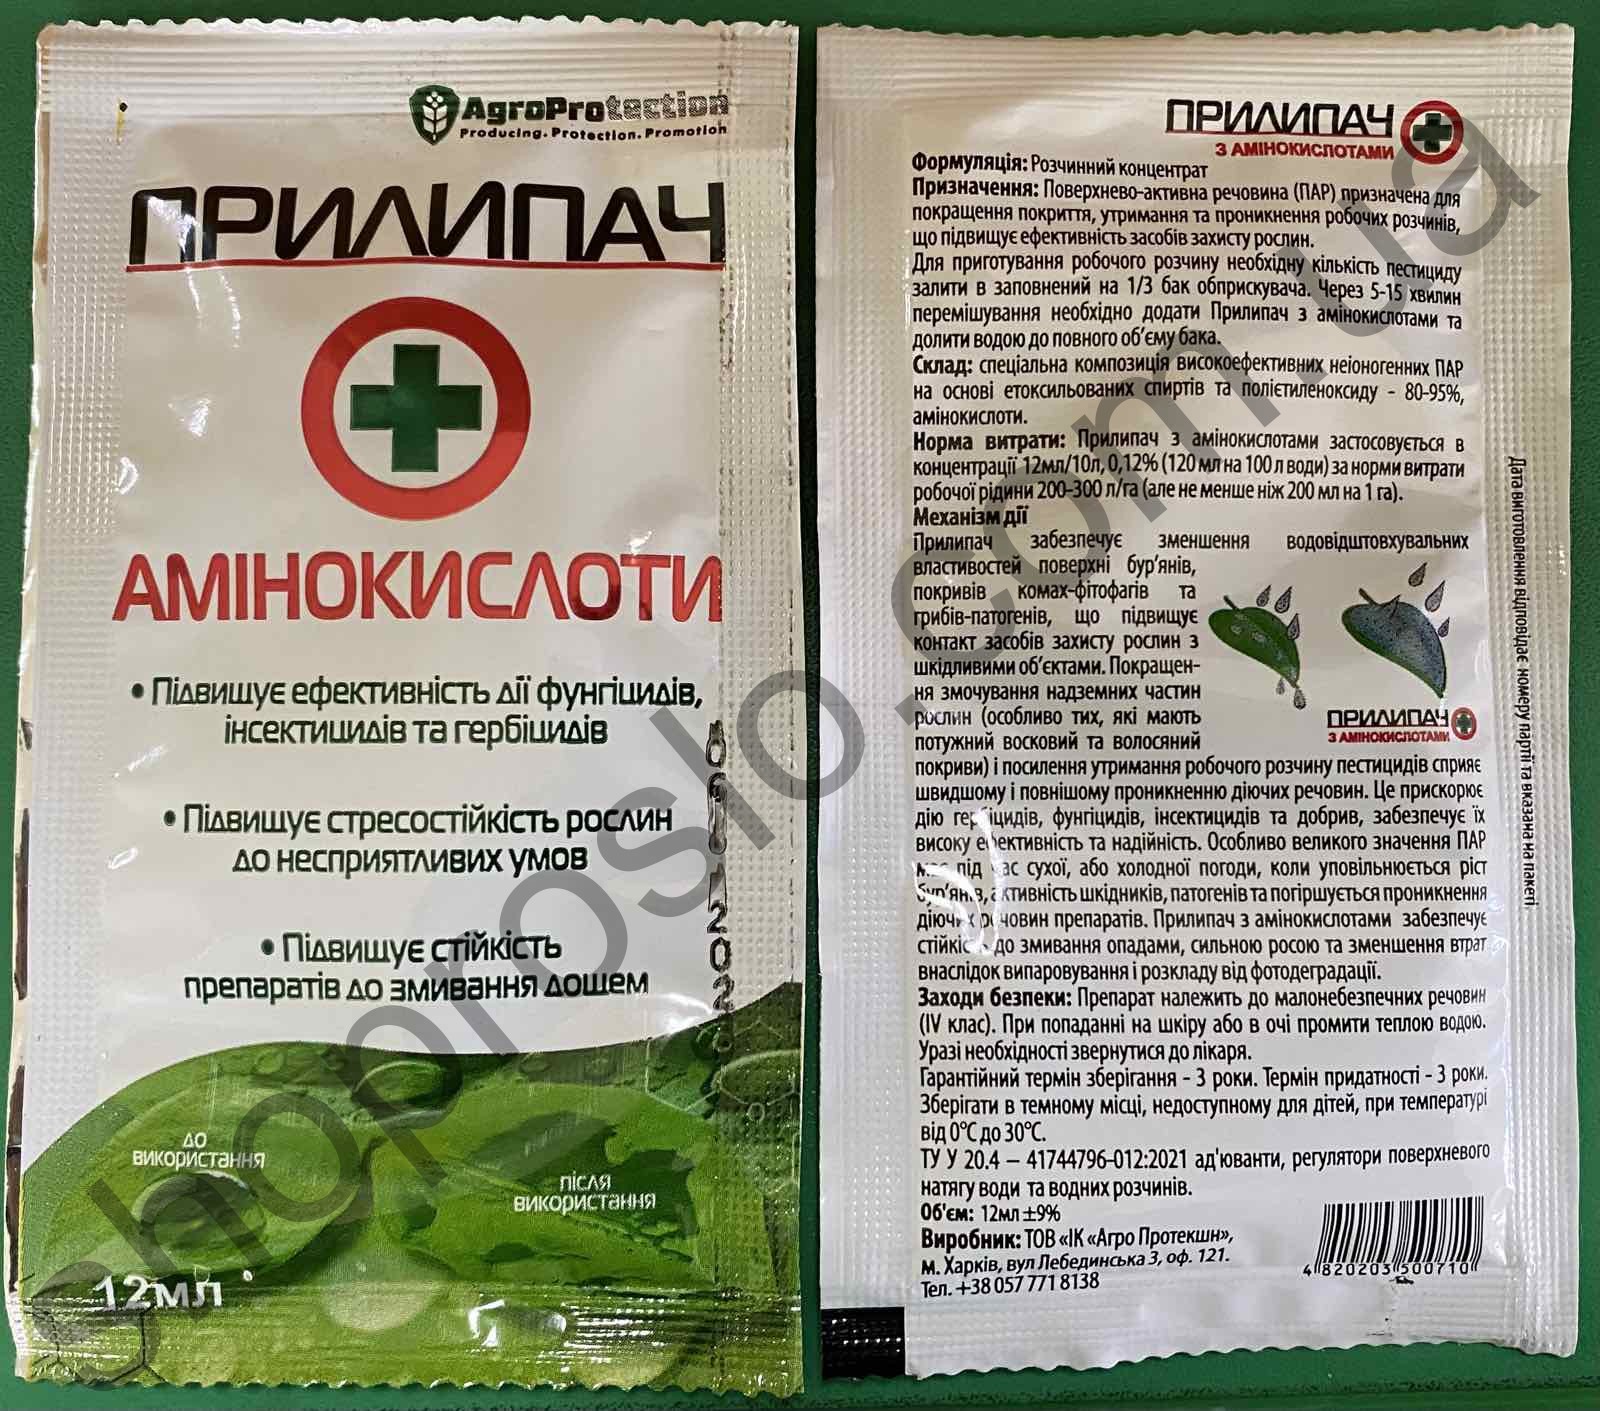 ПРИЛИПАЧ з аминокислотами, ТОВ "Агро Протекшин" (Украина), 12 мл